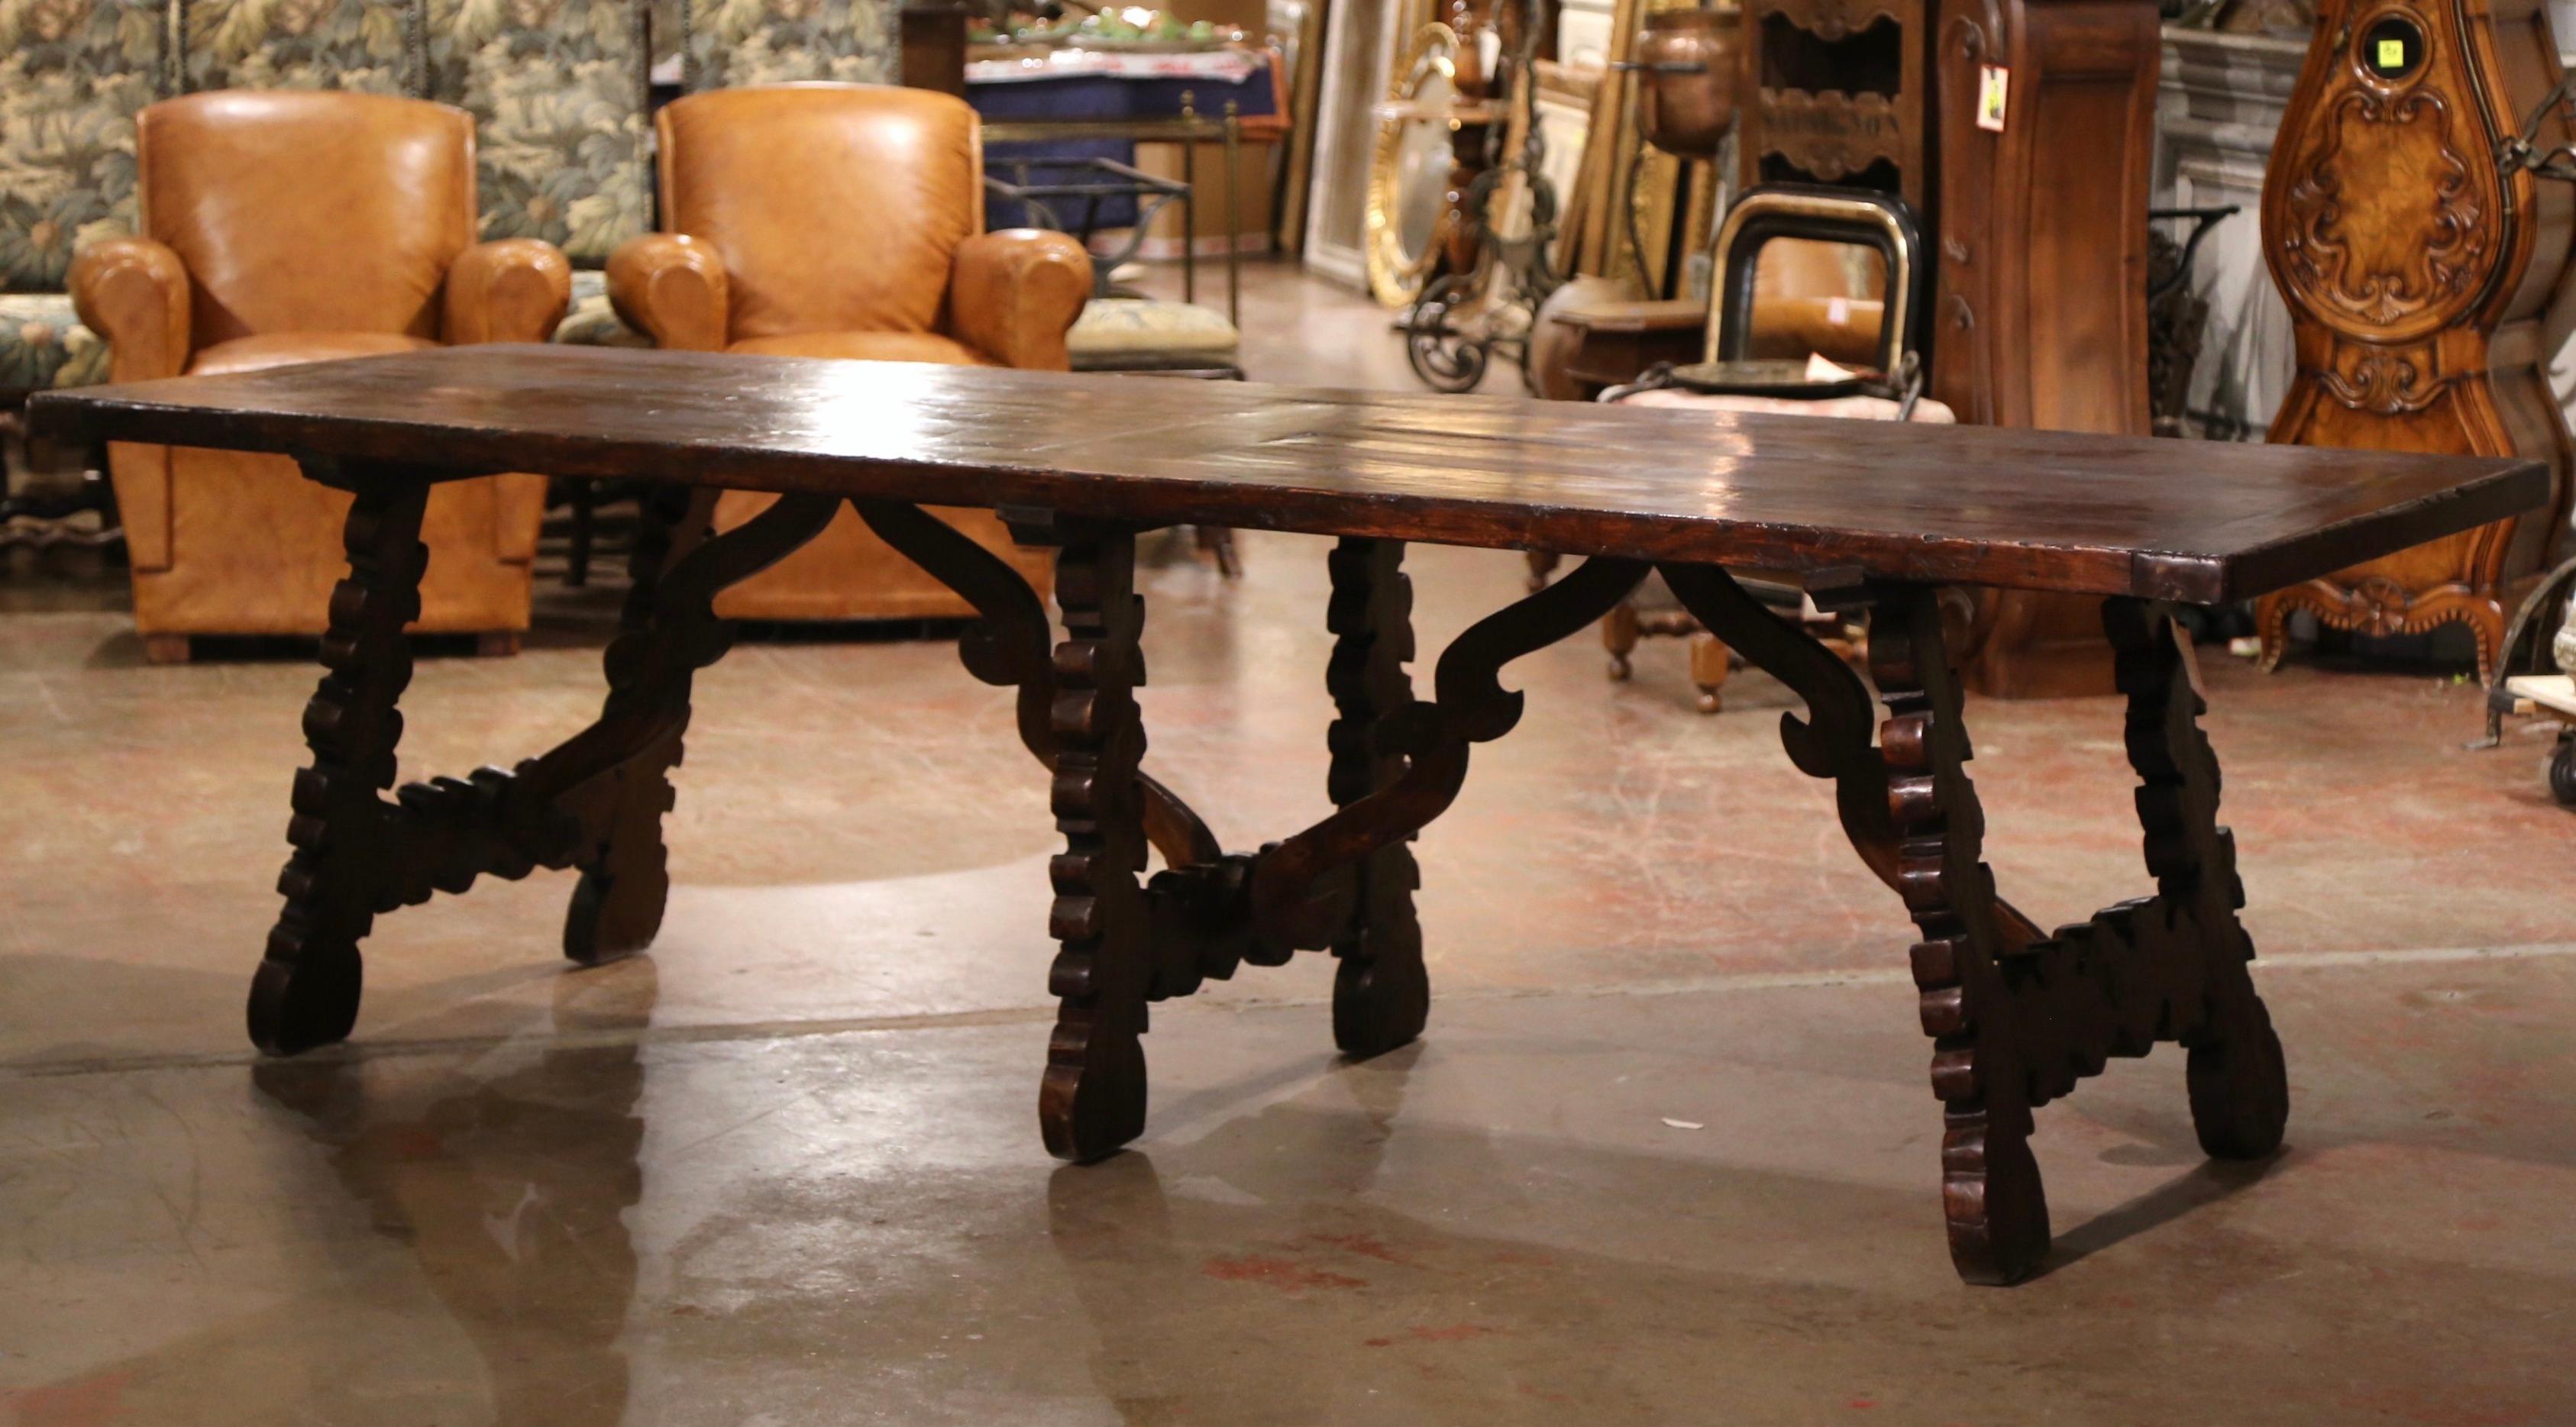 Dieser elegante, antike Esszimmertisch wurde um 1880 in Spanien gefertigt. Der fast 9 Fuß lange Tisch steht auf drei kunstvoll geschwungenen Sockelbeinen, die jeweils mit einer geschnitzten kathedralenförmigen Bahre verbunden sind; die rechteckige